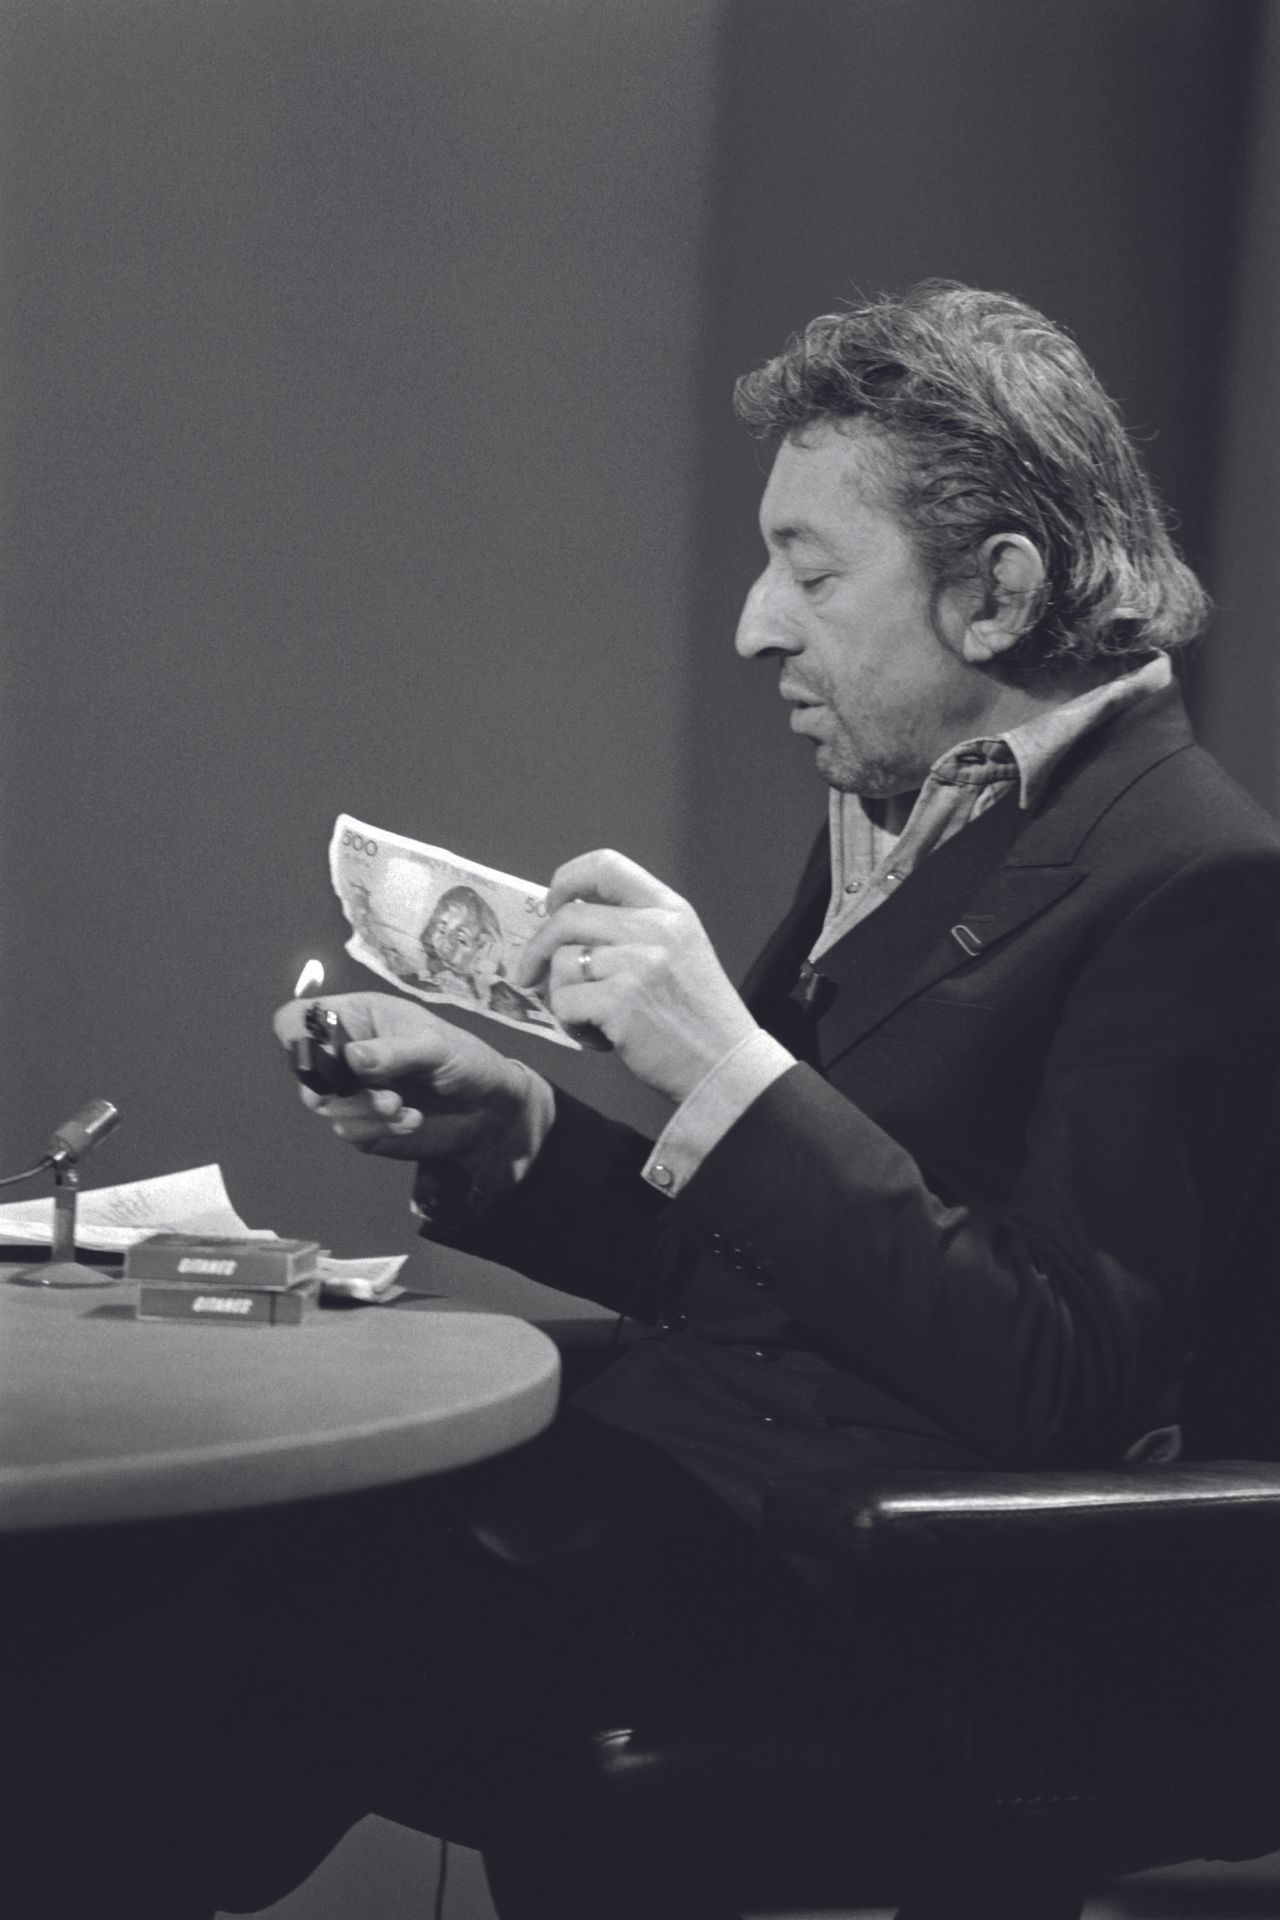 AFP - Philippe WOJAZER AFP - Philippe WOJAZER

Serge Gainsbourg brucia una banco&hellip;